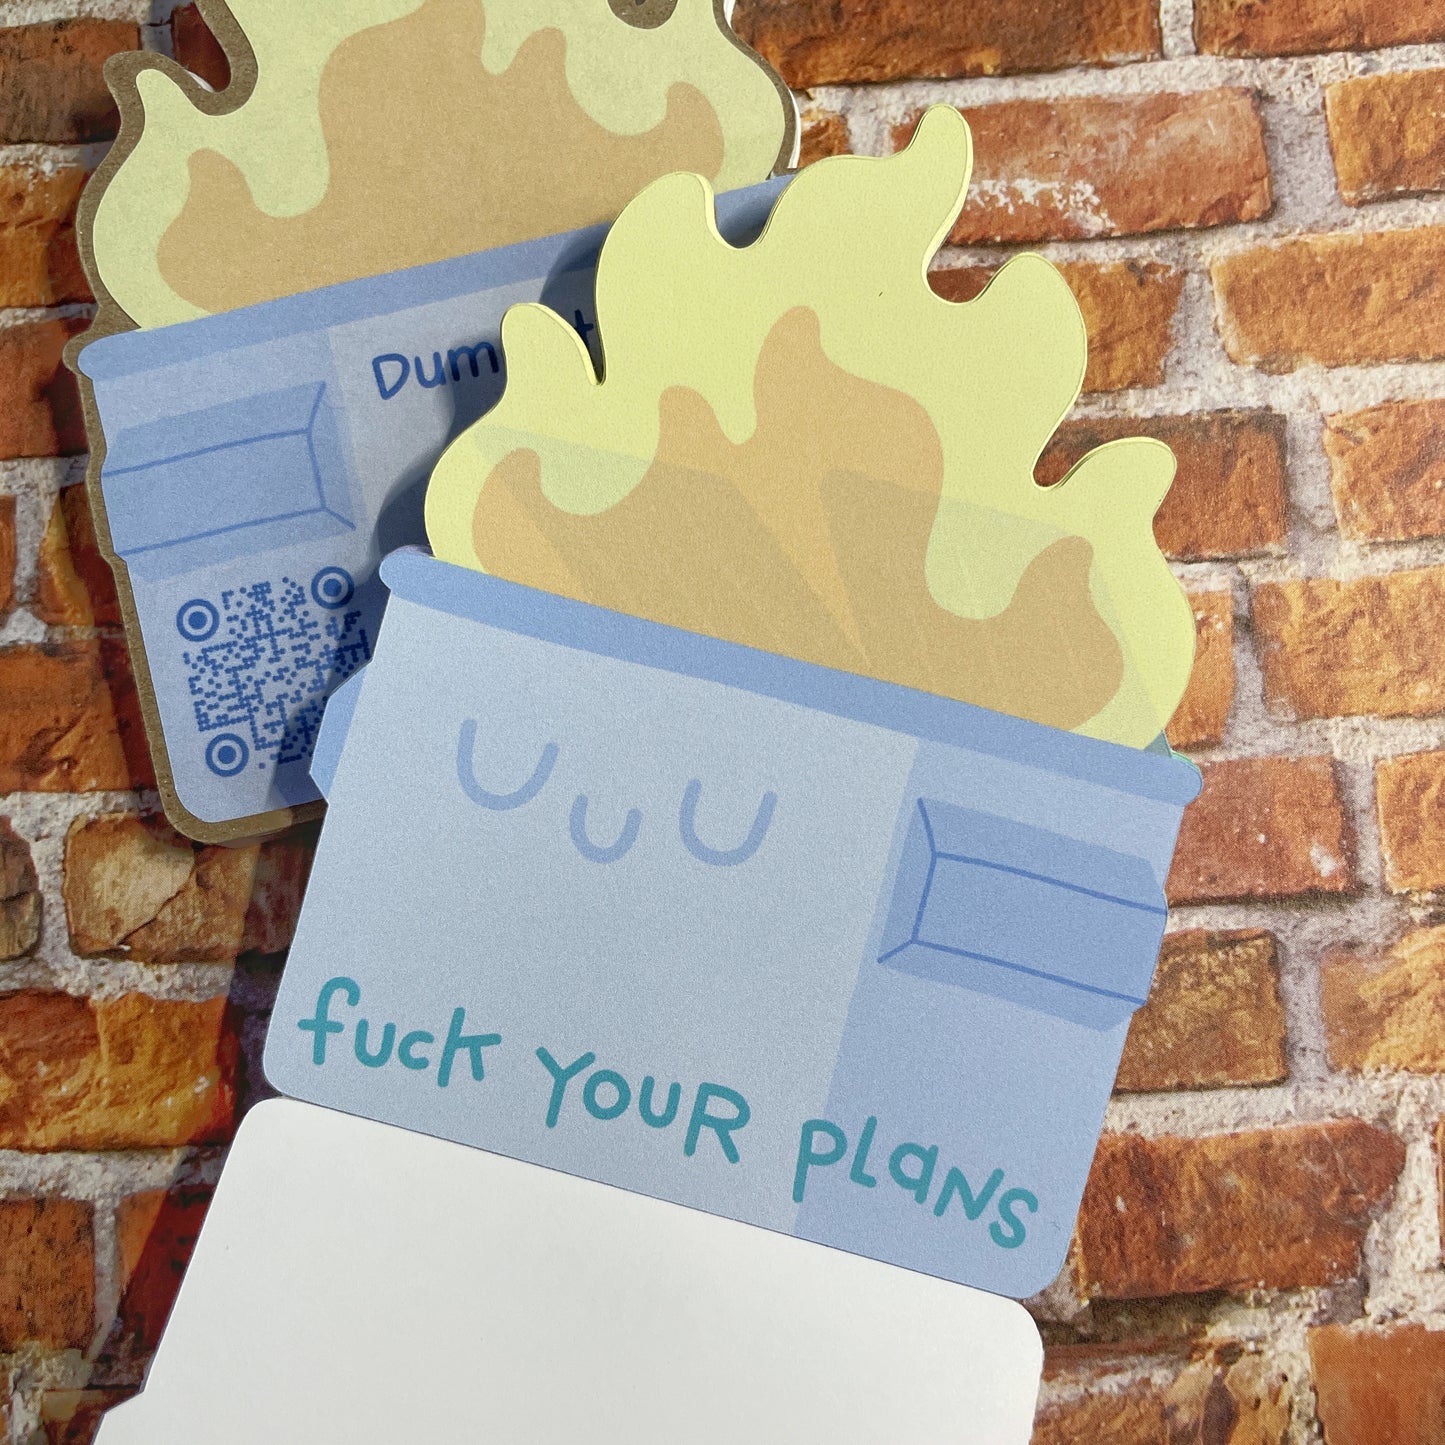 Dumpster Fire notepad